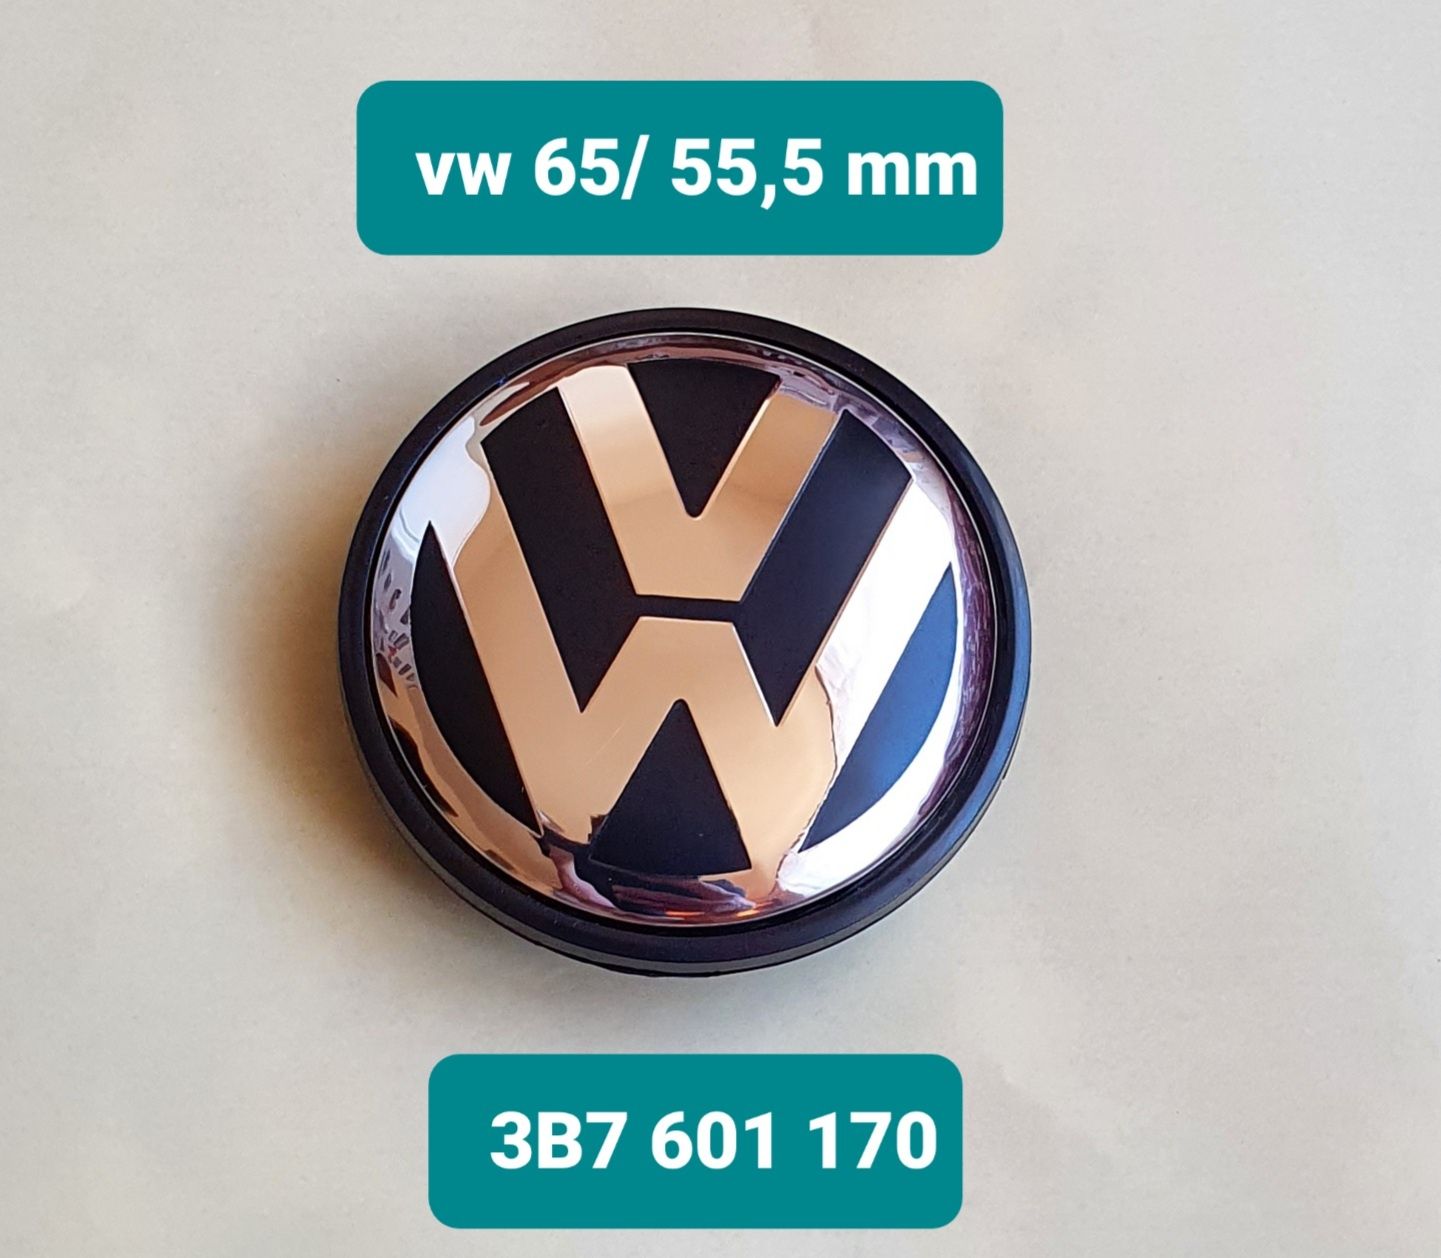 Capace jante   VW 65 mm/ Audi 60 mm/ Audi 61 mm/ Audi 69 mm/ BMW 68 mm